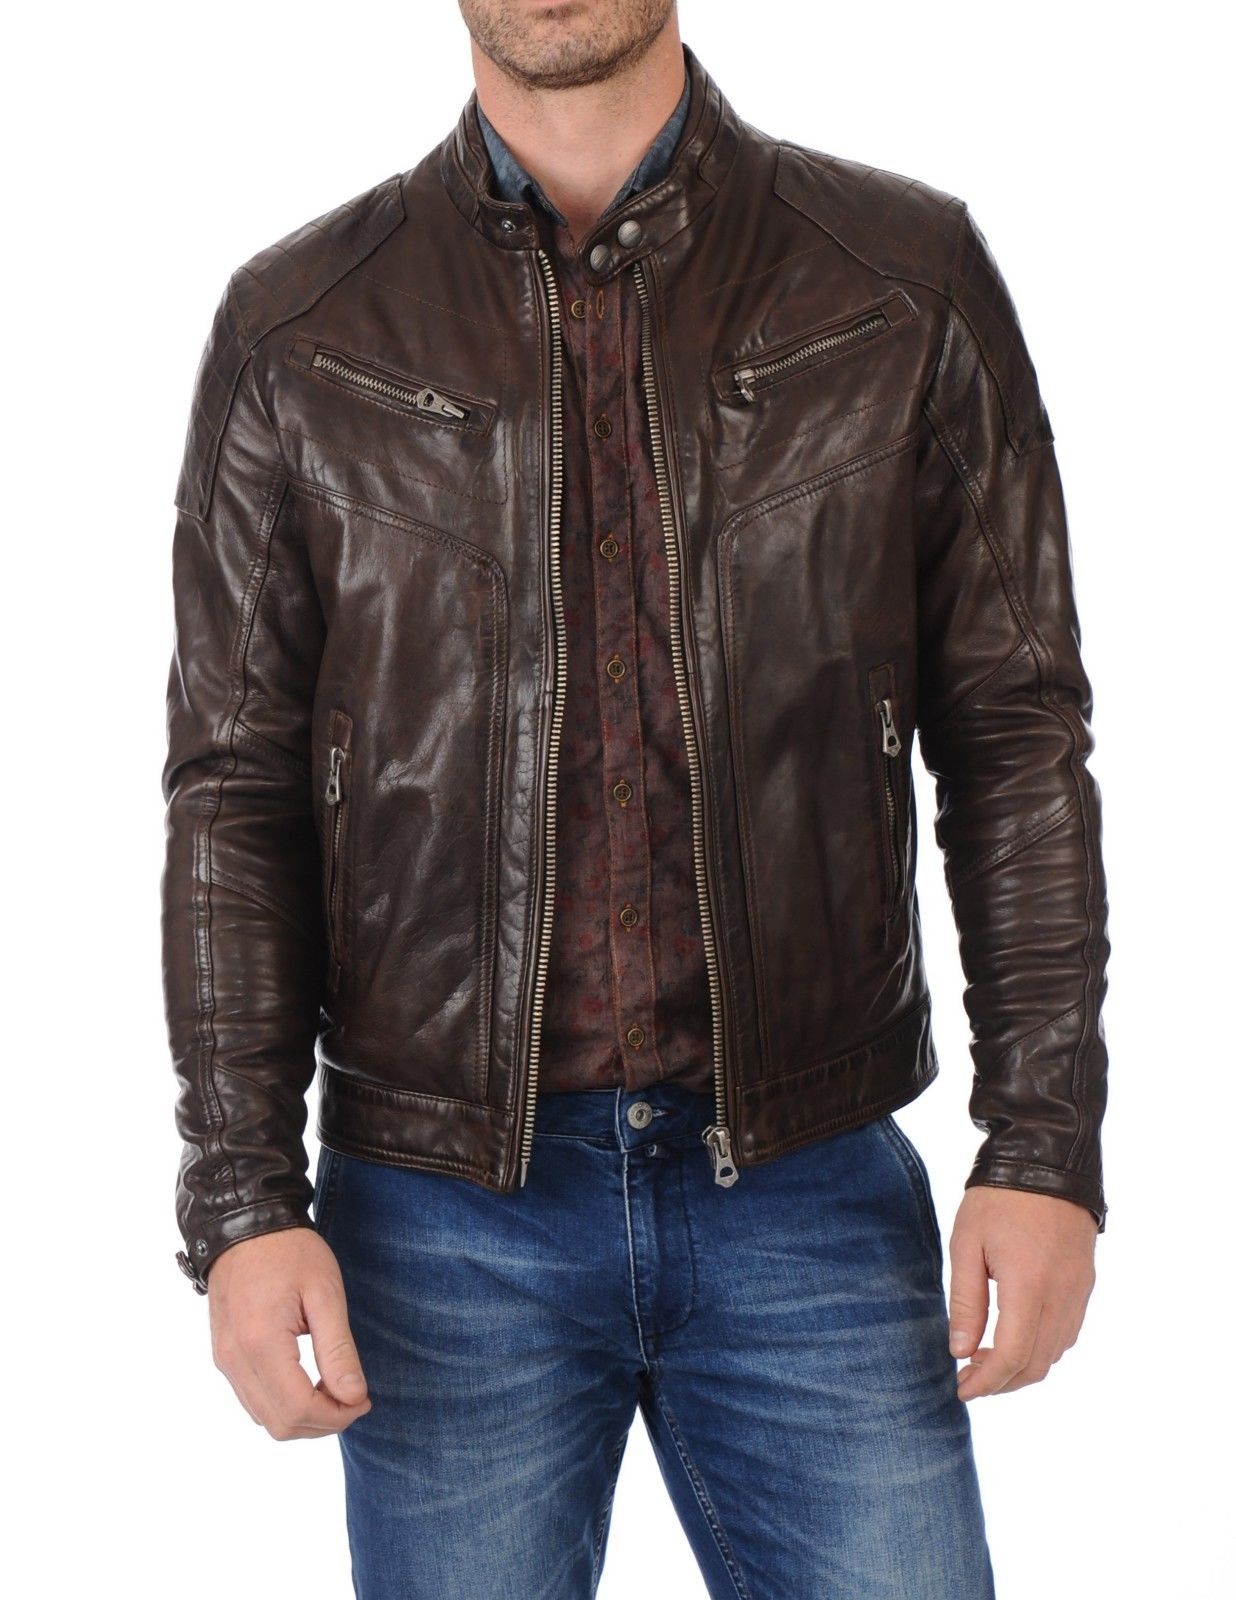 Men's Slim Fit Designed Brown Leather Jacket Coat Motor Biker Coat - 30 ...